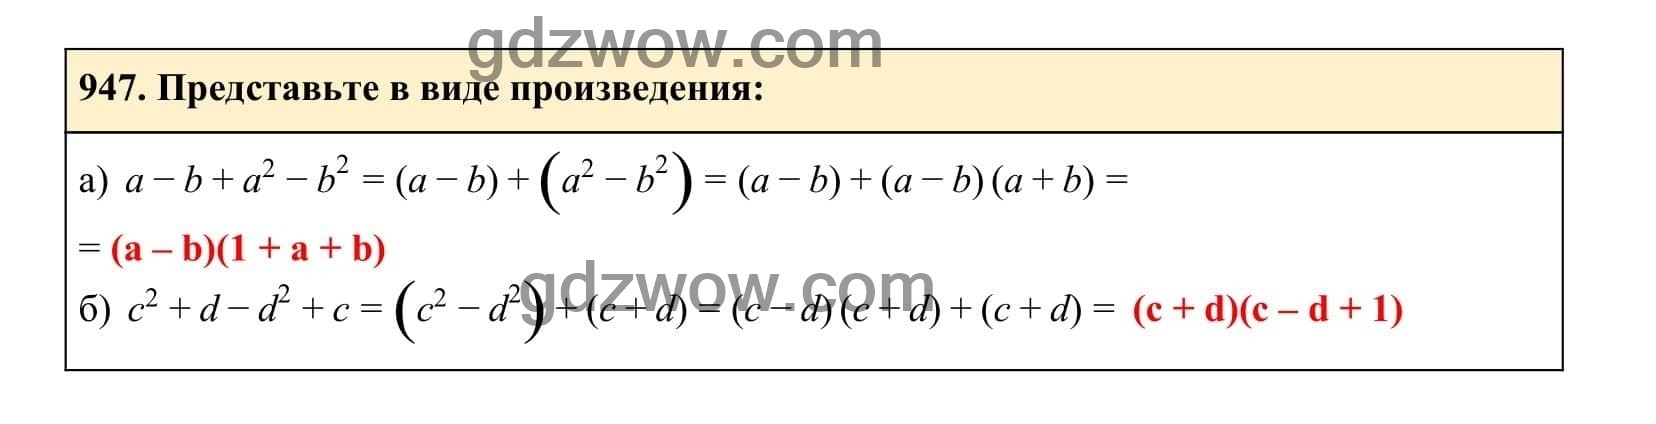 Упражнение 947 - ГДЗ по Алгебре 7 класс Учебник Макарычев (решебник) - GDZwow